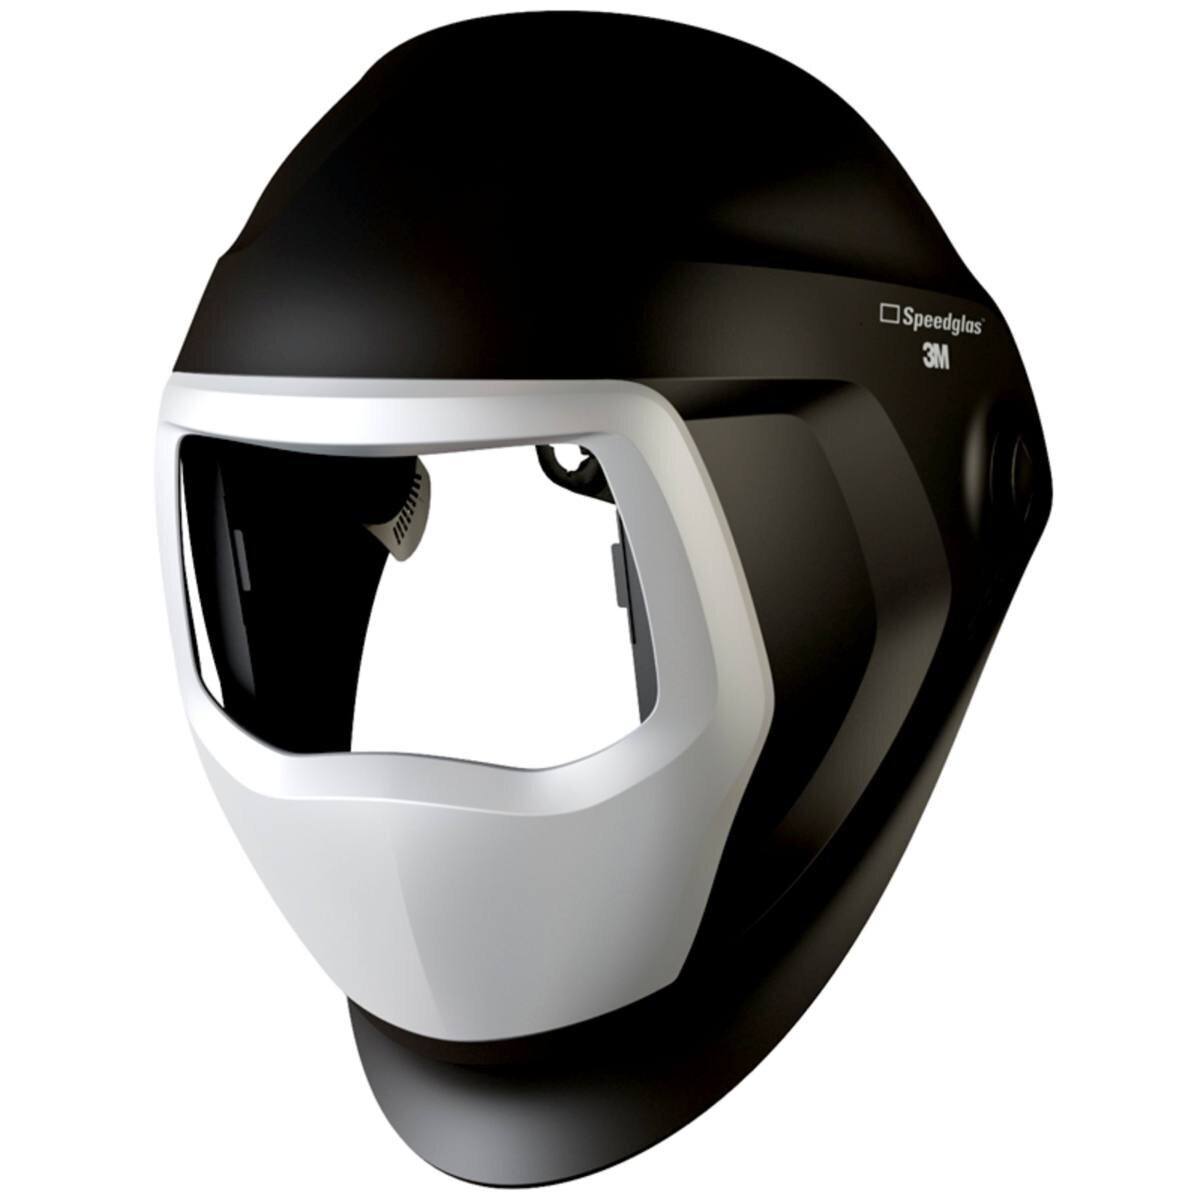 3M Speedglas Masque de soudure 9100 sans fenêtre latérale, avec serre-tête, sans ADF Filtre de soudure automatique #501100